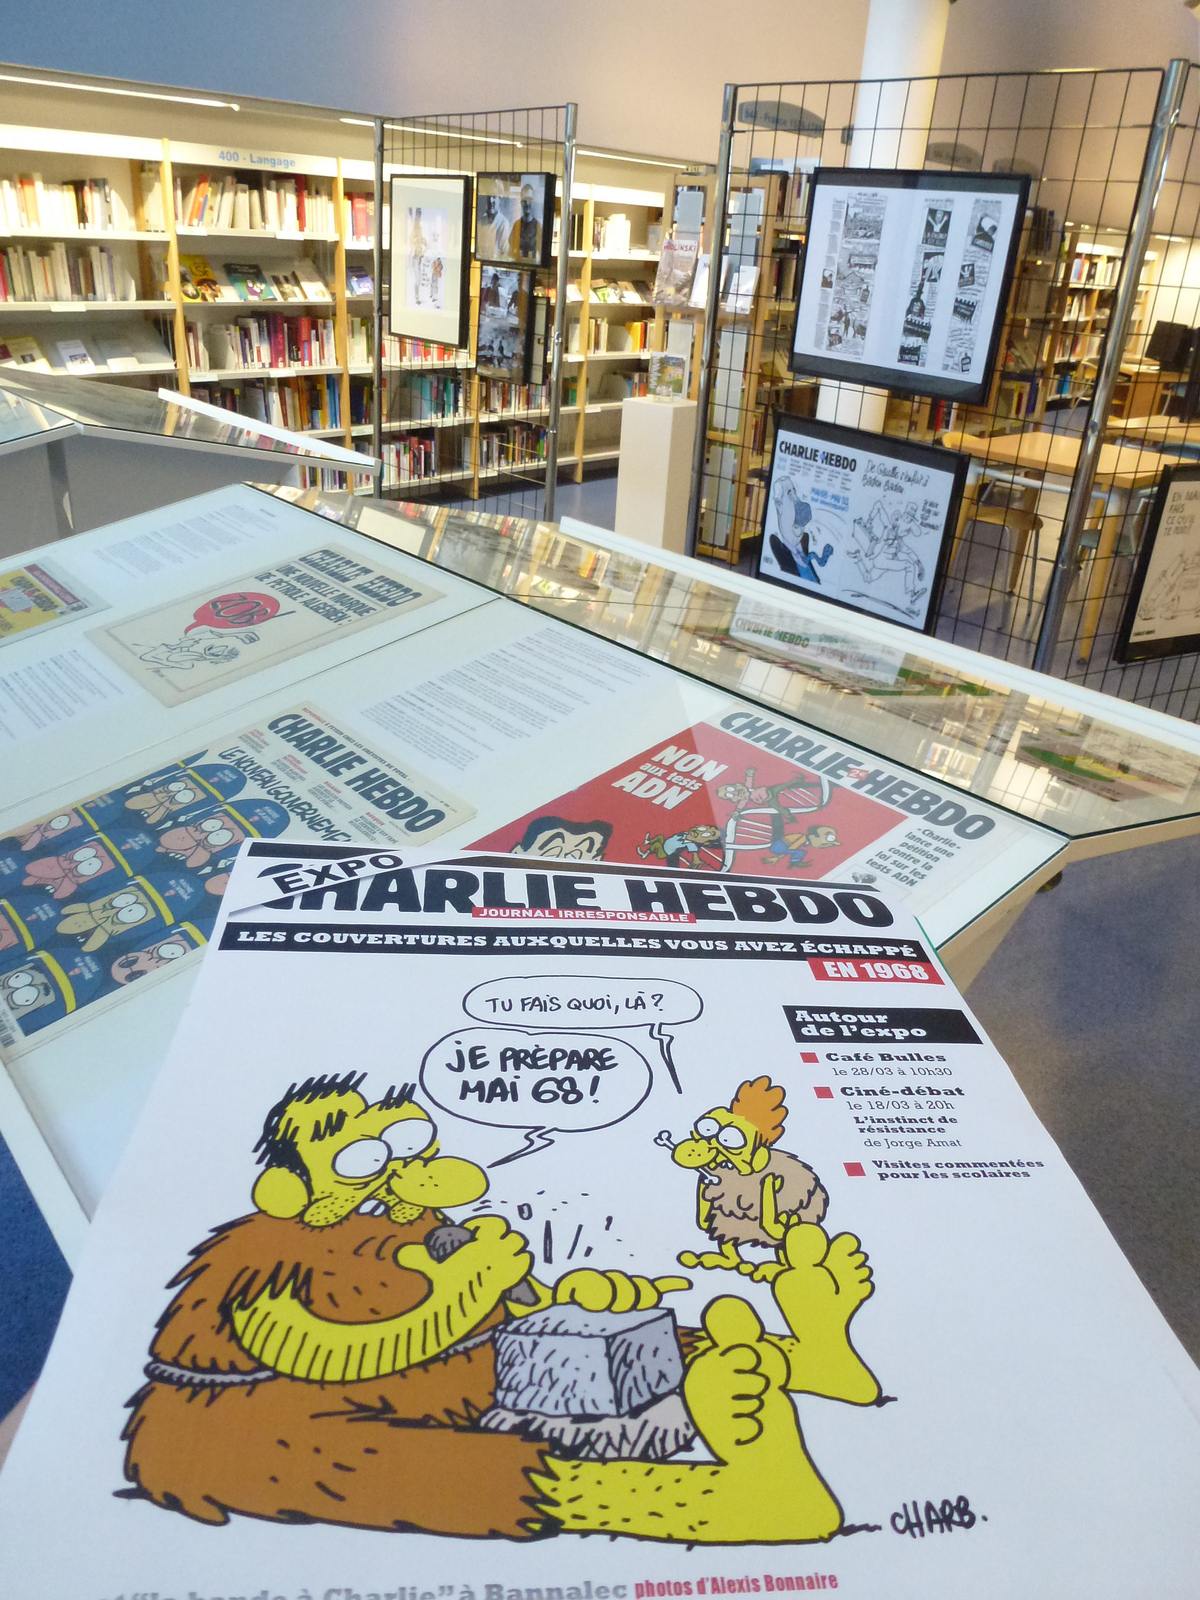 charlie hebdo exhibit15 Exhibition Charlie Hebdo at Quimperle